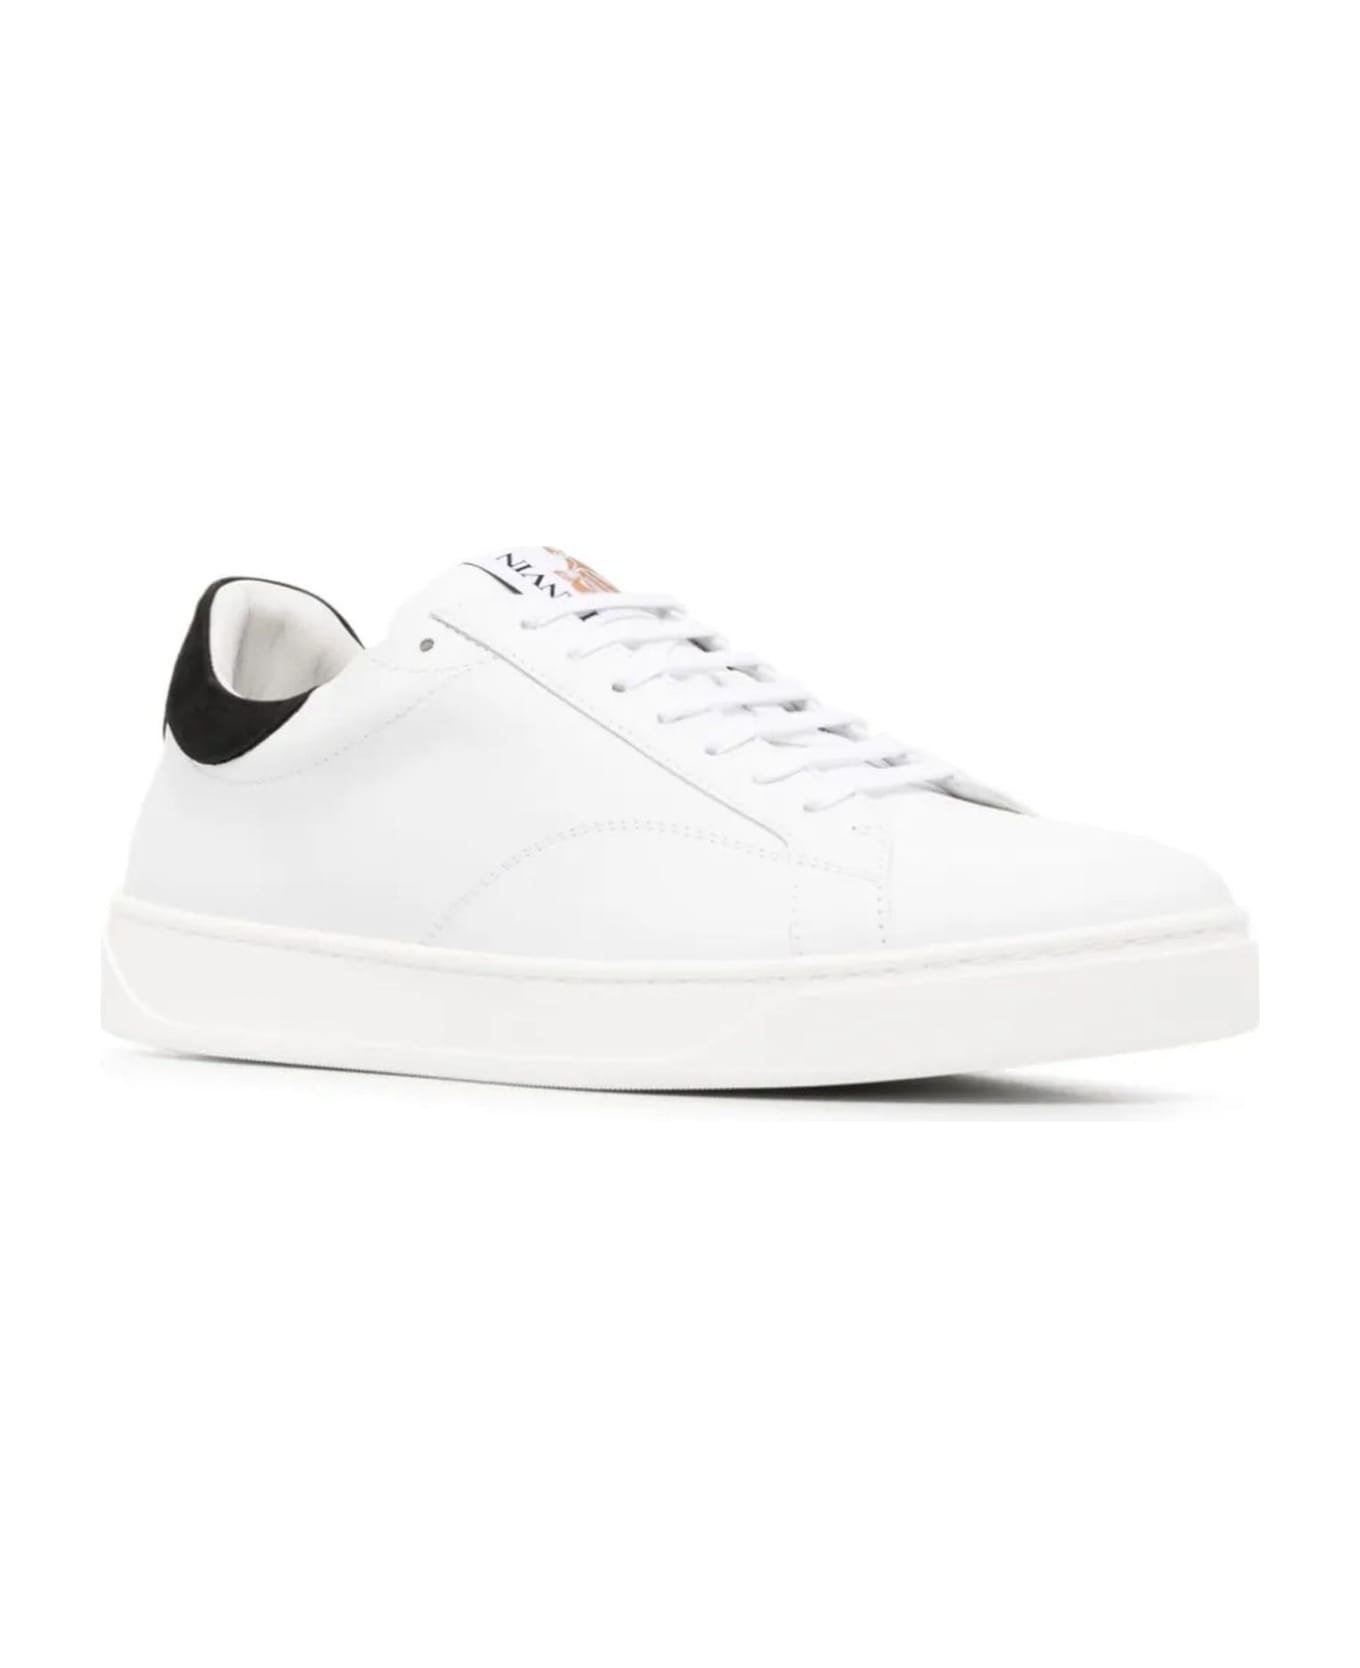 Lanvin Sneakers White - White スニーカー